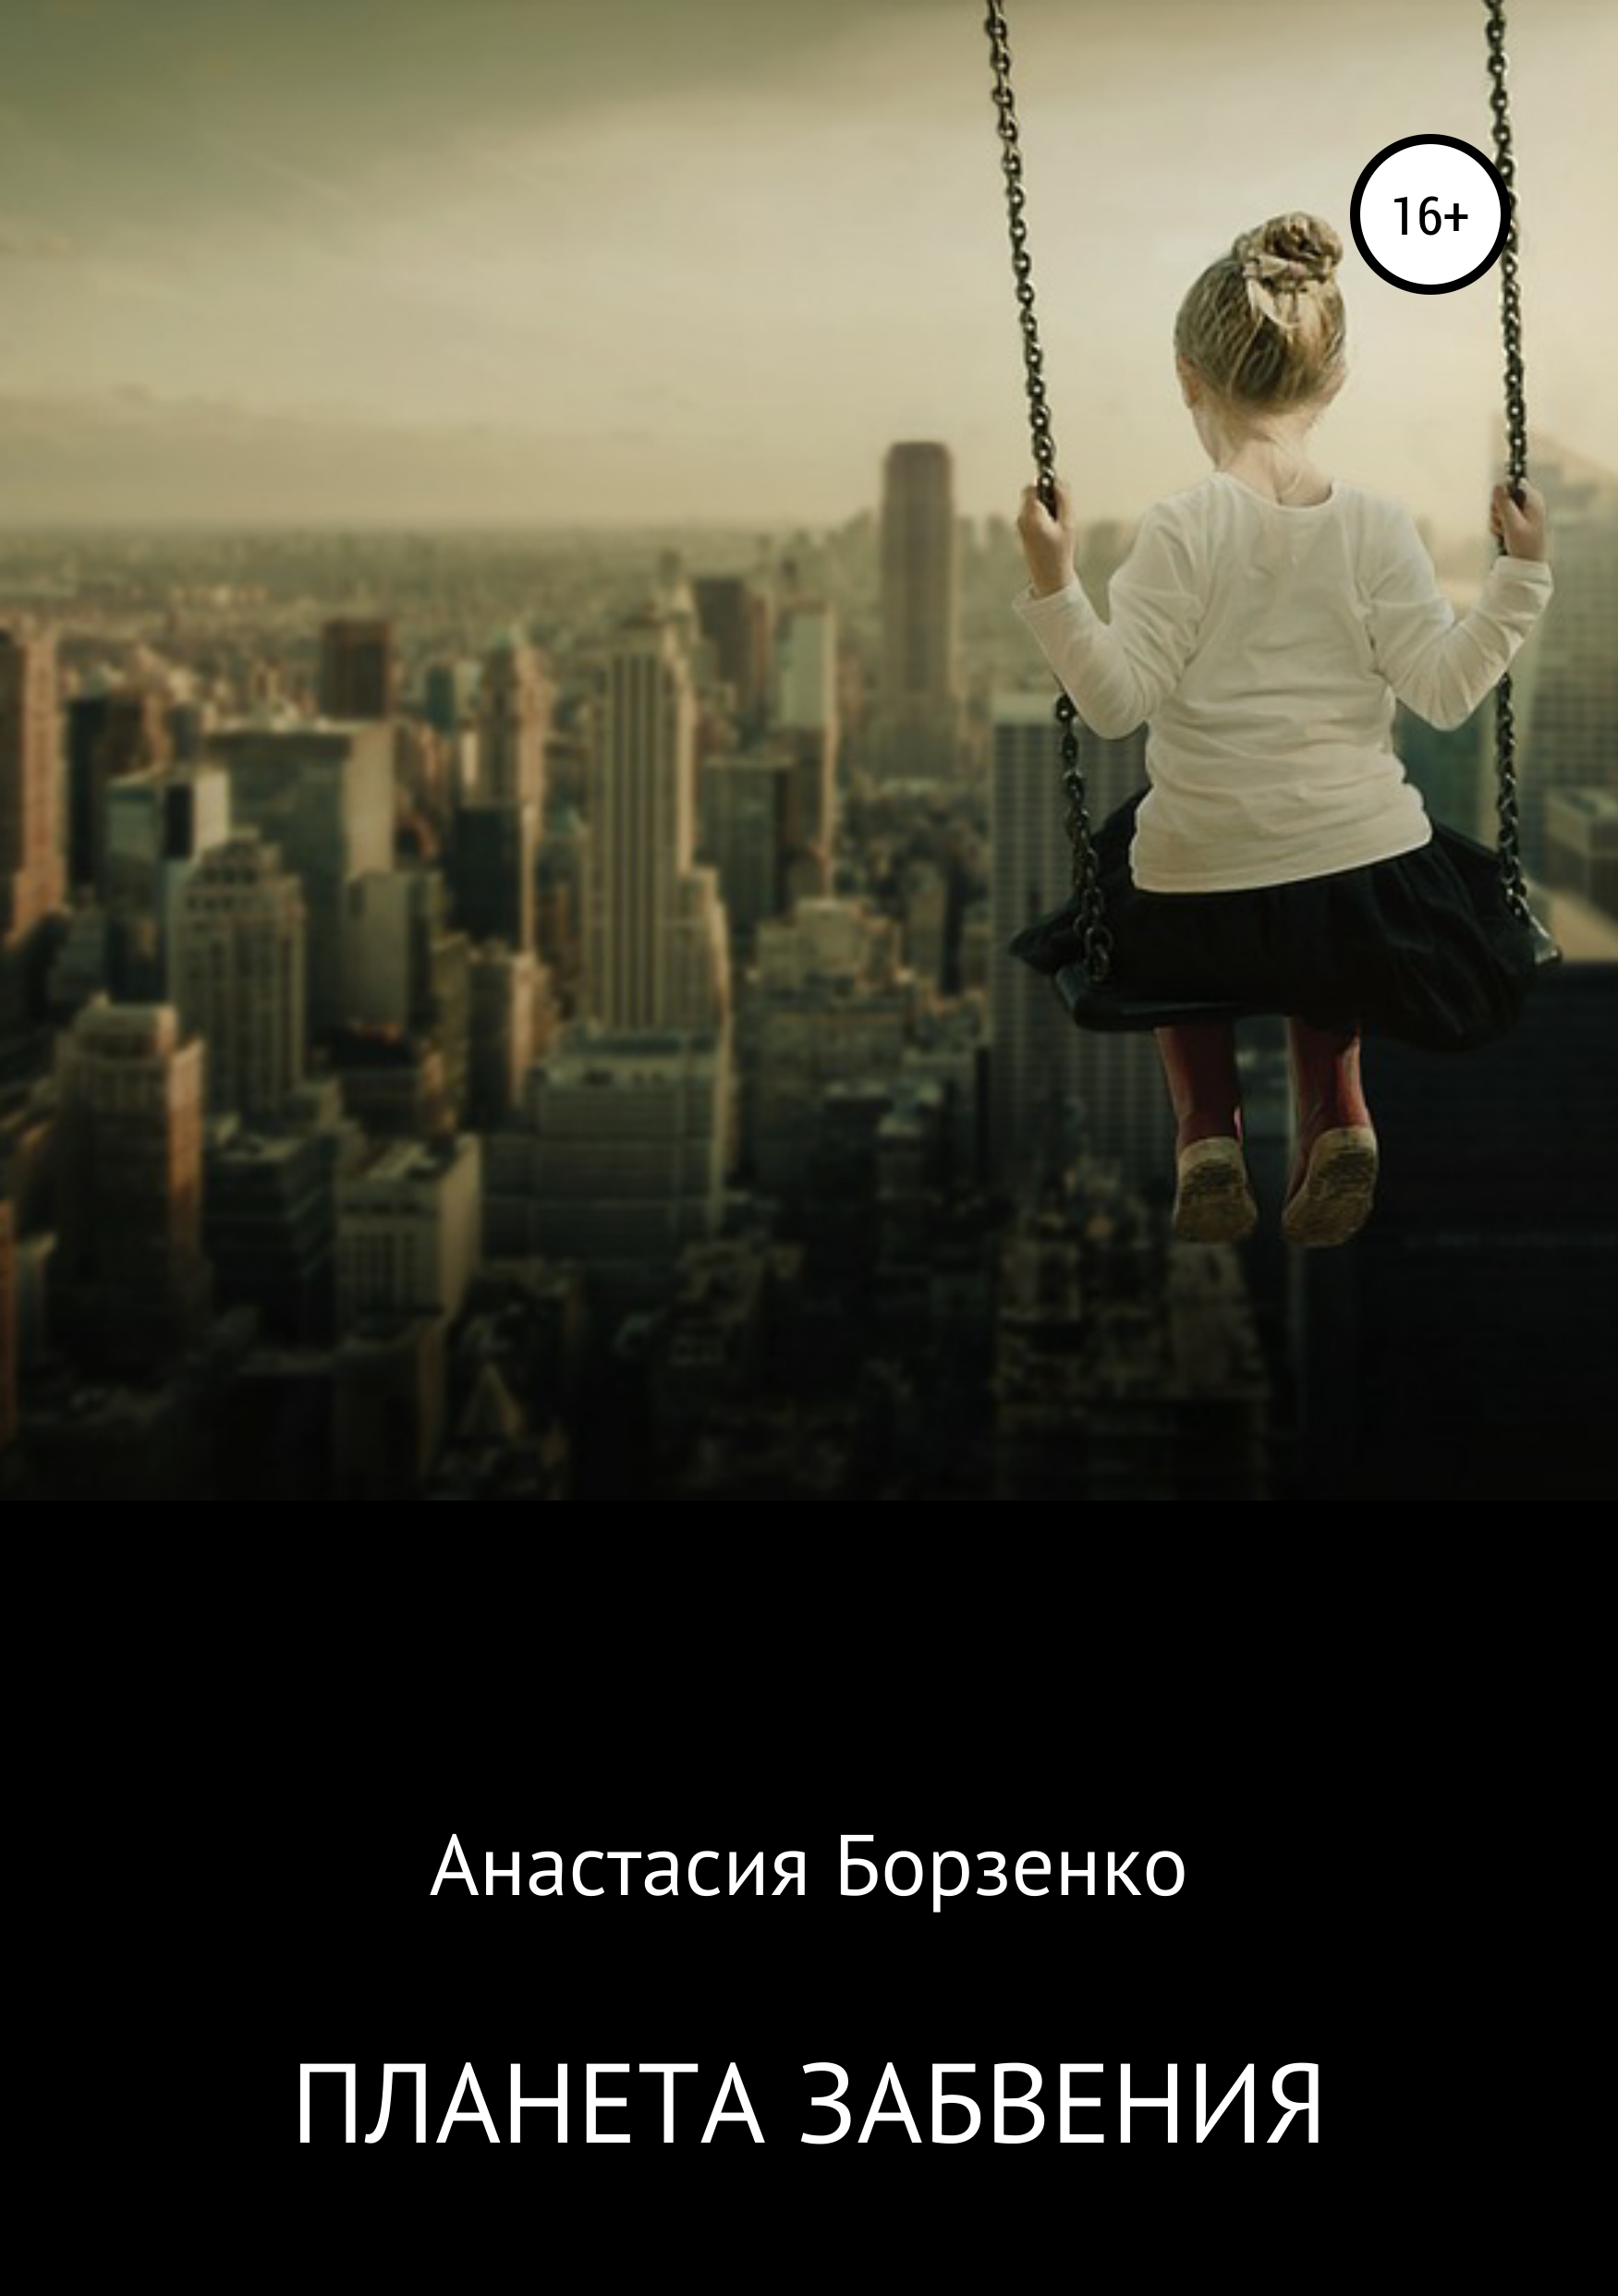 Скачать Планета забвения - Анастасия Борзенко